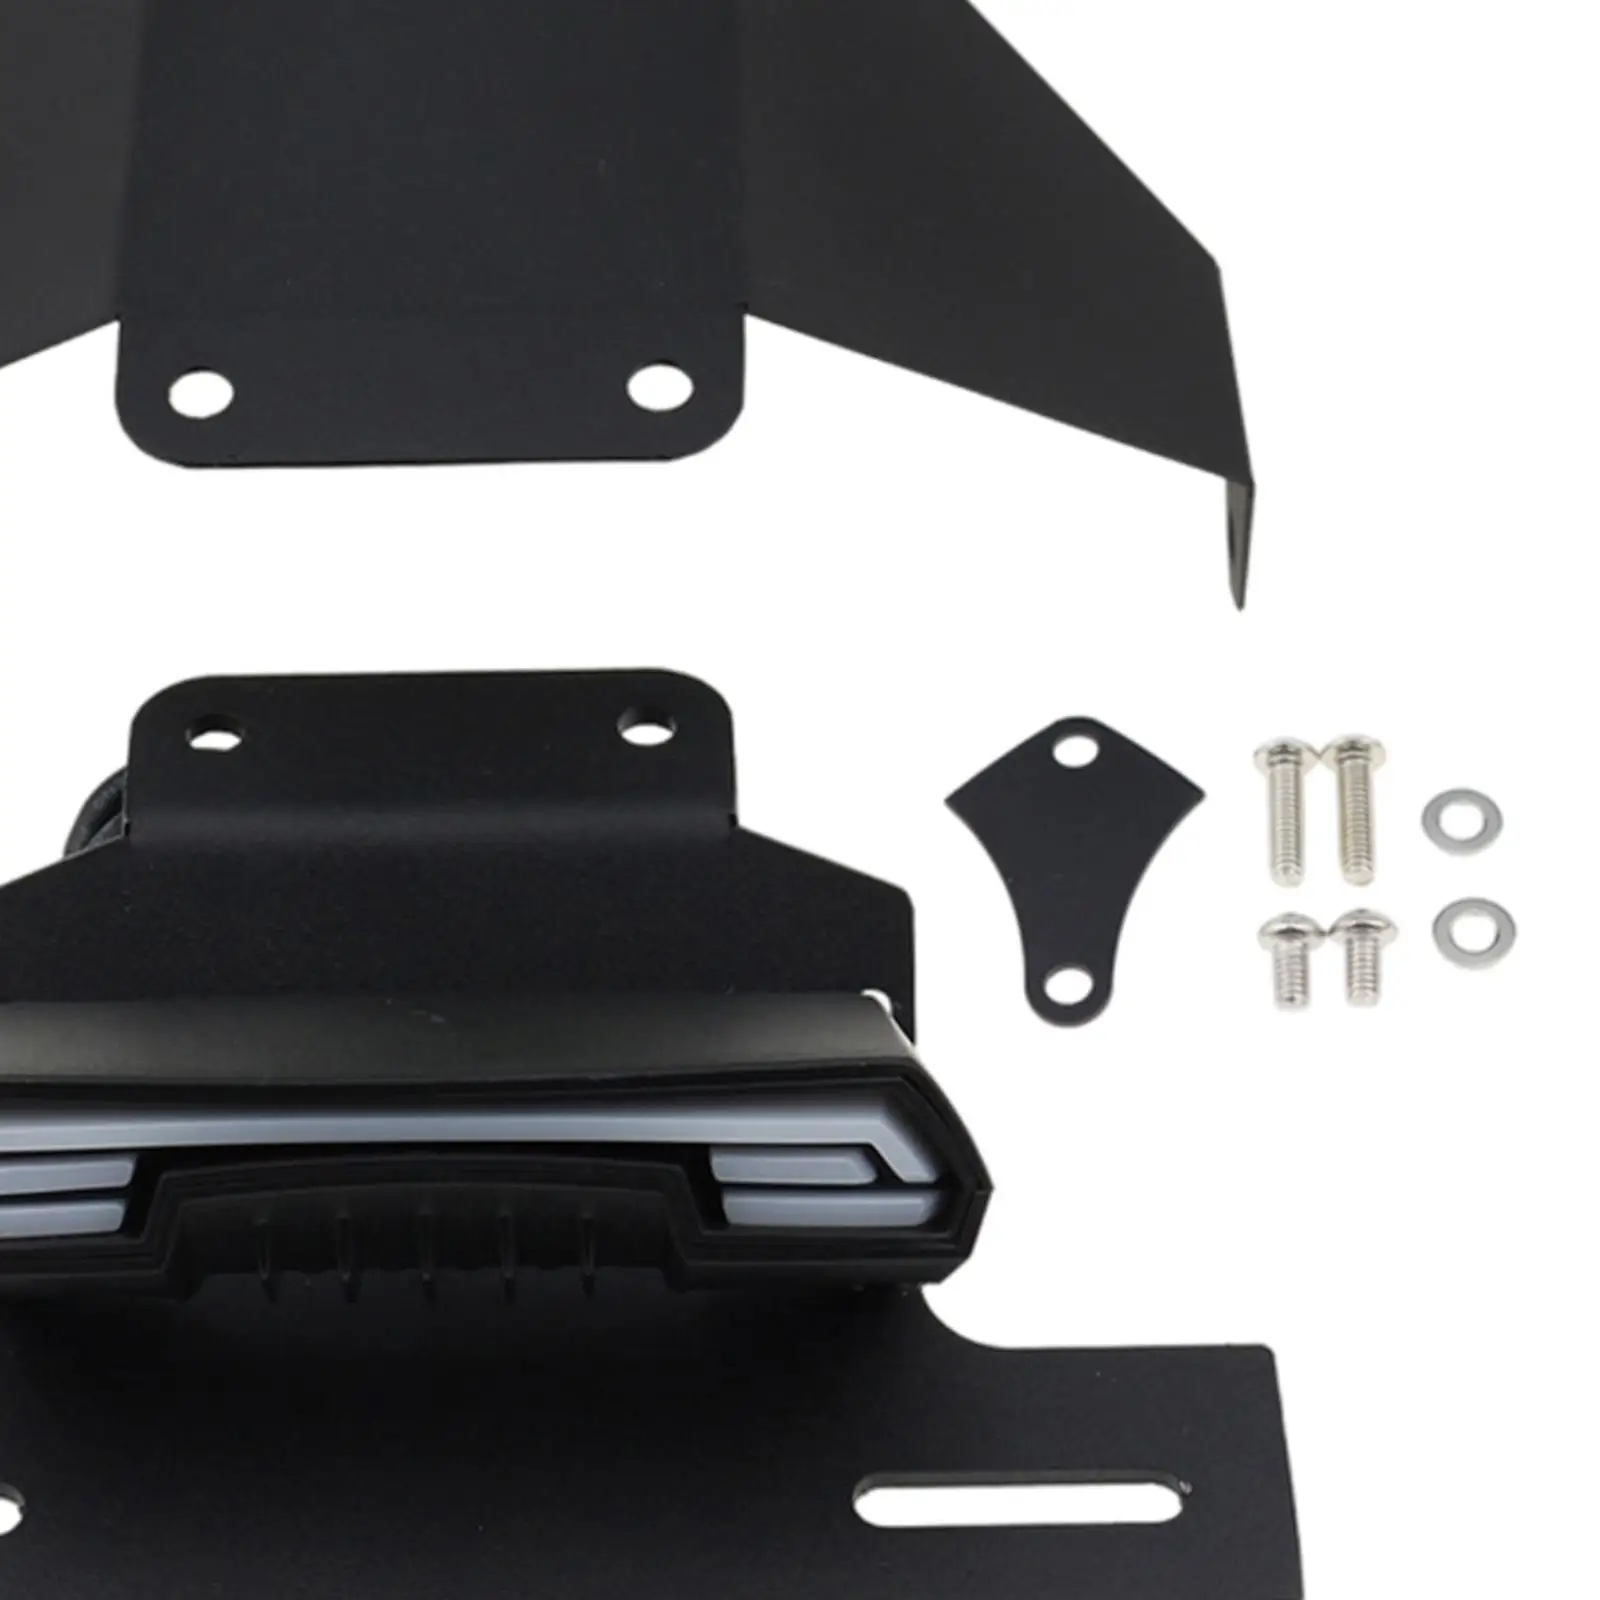 License Plate Holder Frame Bracket Kit fits for YAMAHA BOLT R-SPEC XV950R 2014-2019